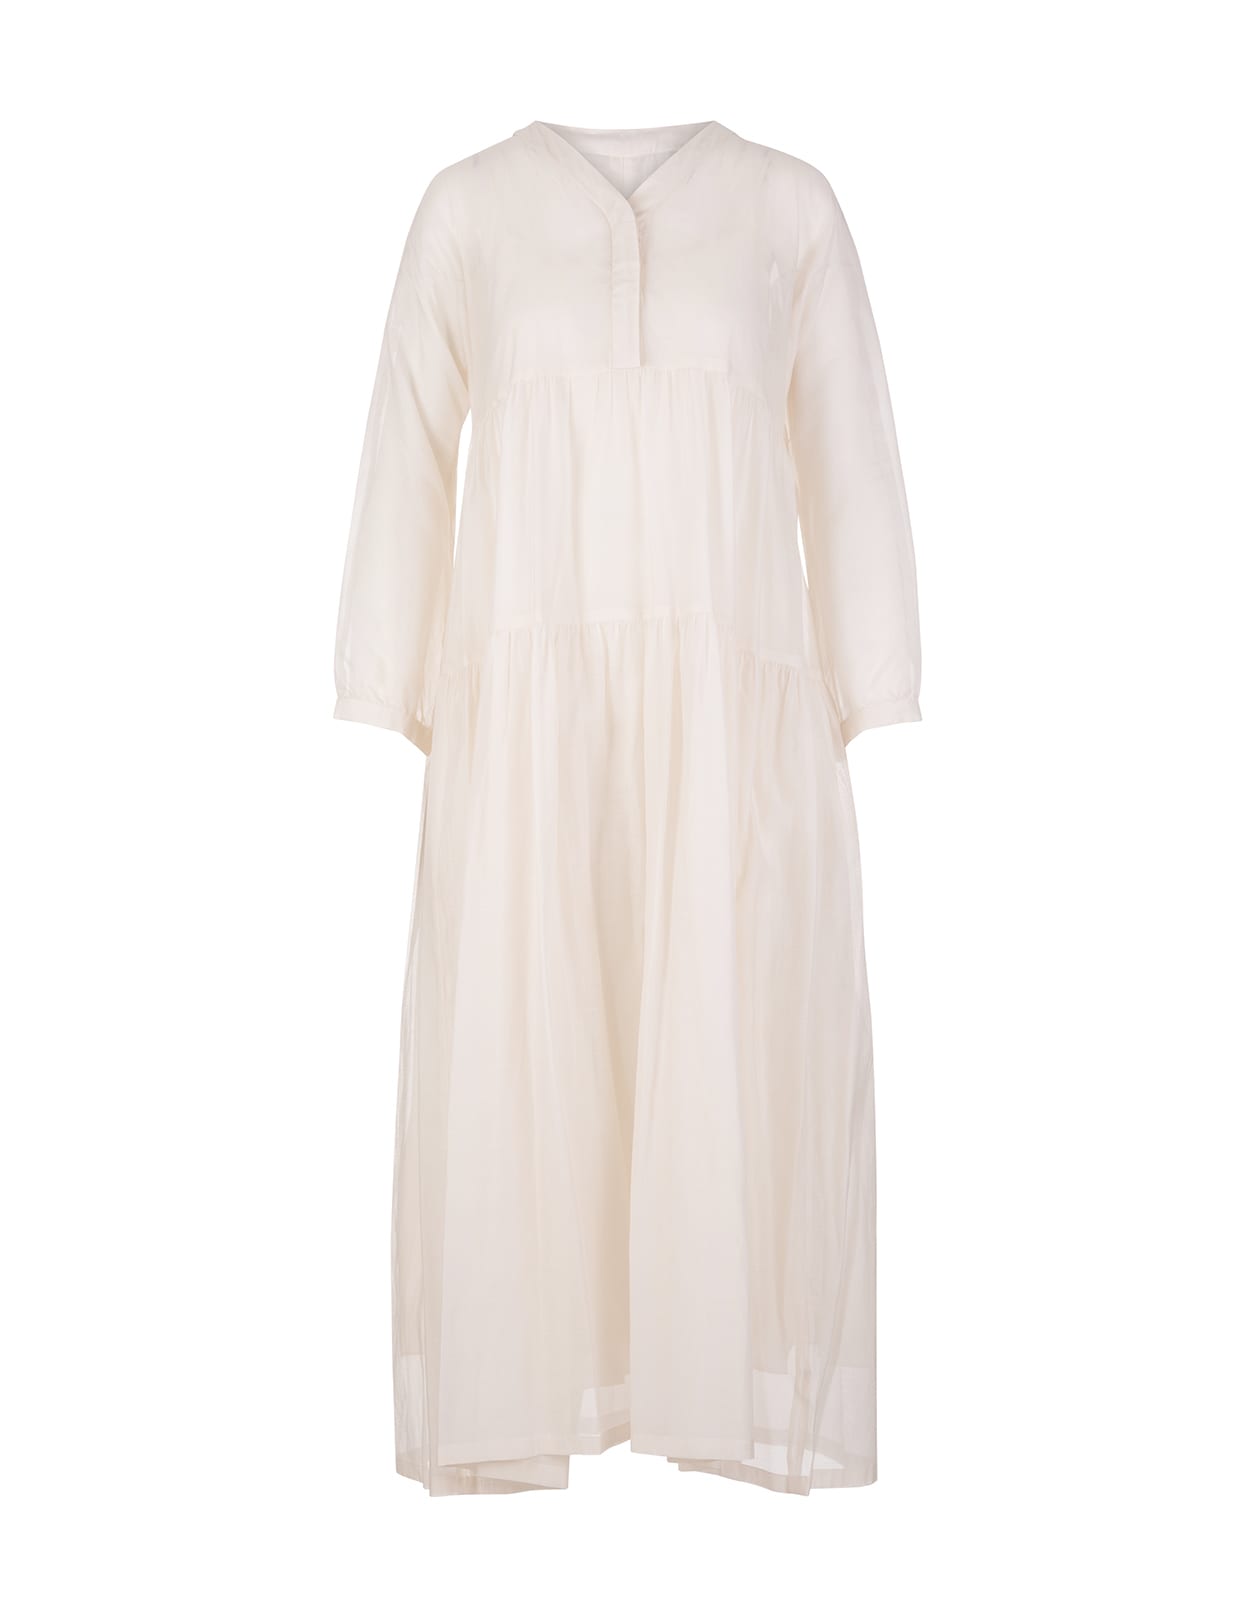 'S Max Mara White Sesamo Long Dress